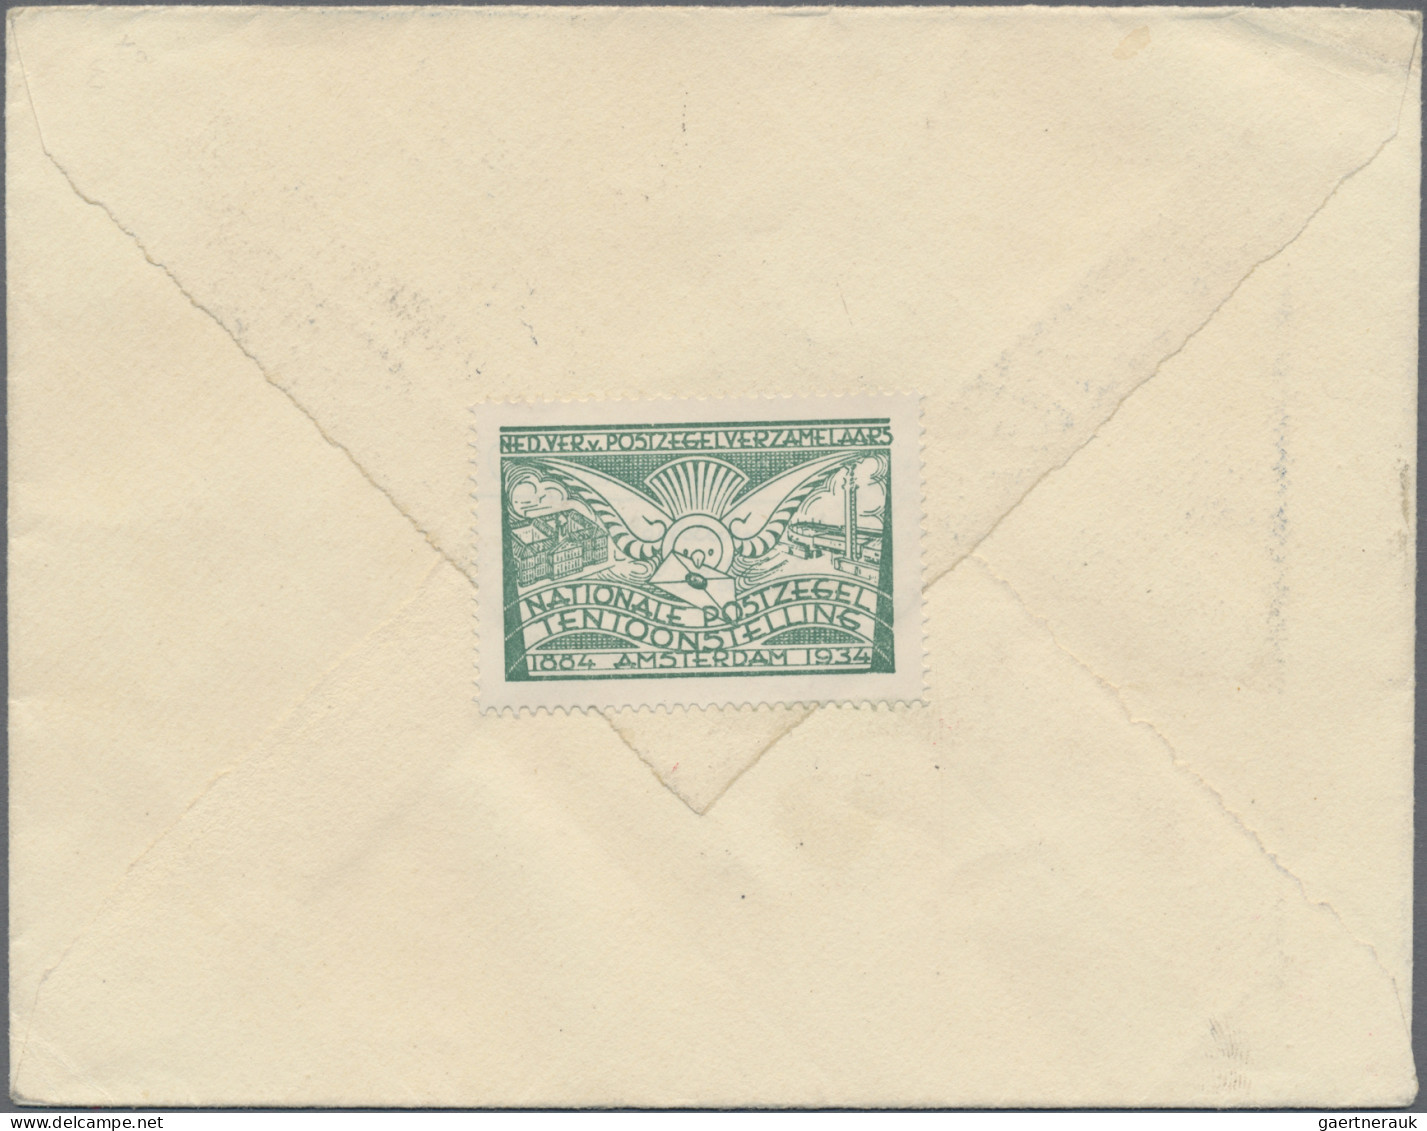 Zeppelin Mail - Germany: 1931, Polarfahrt, Zuleitung Niederlande, Brief Von Frie - Luft- Und Zeppelinpost